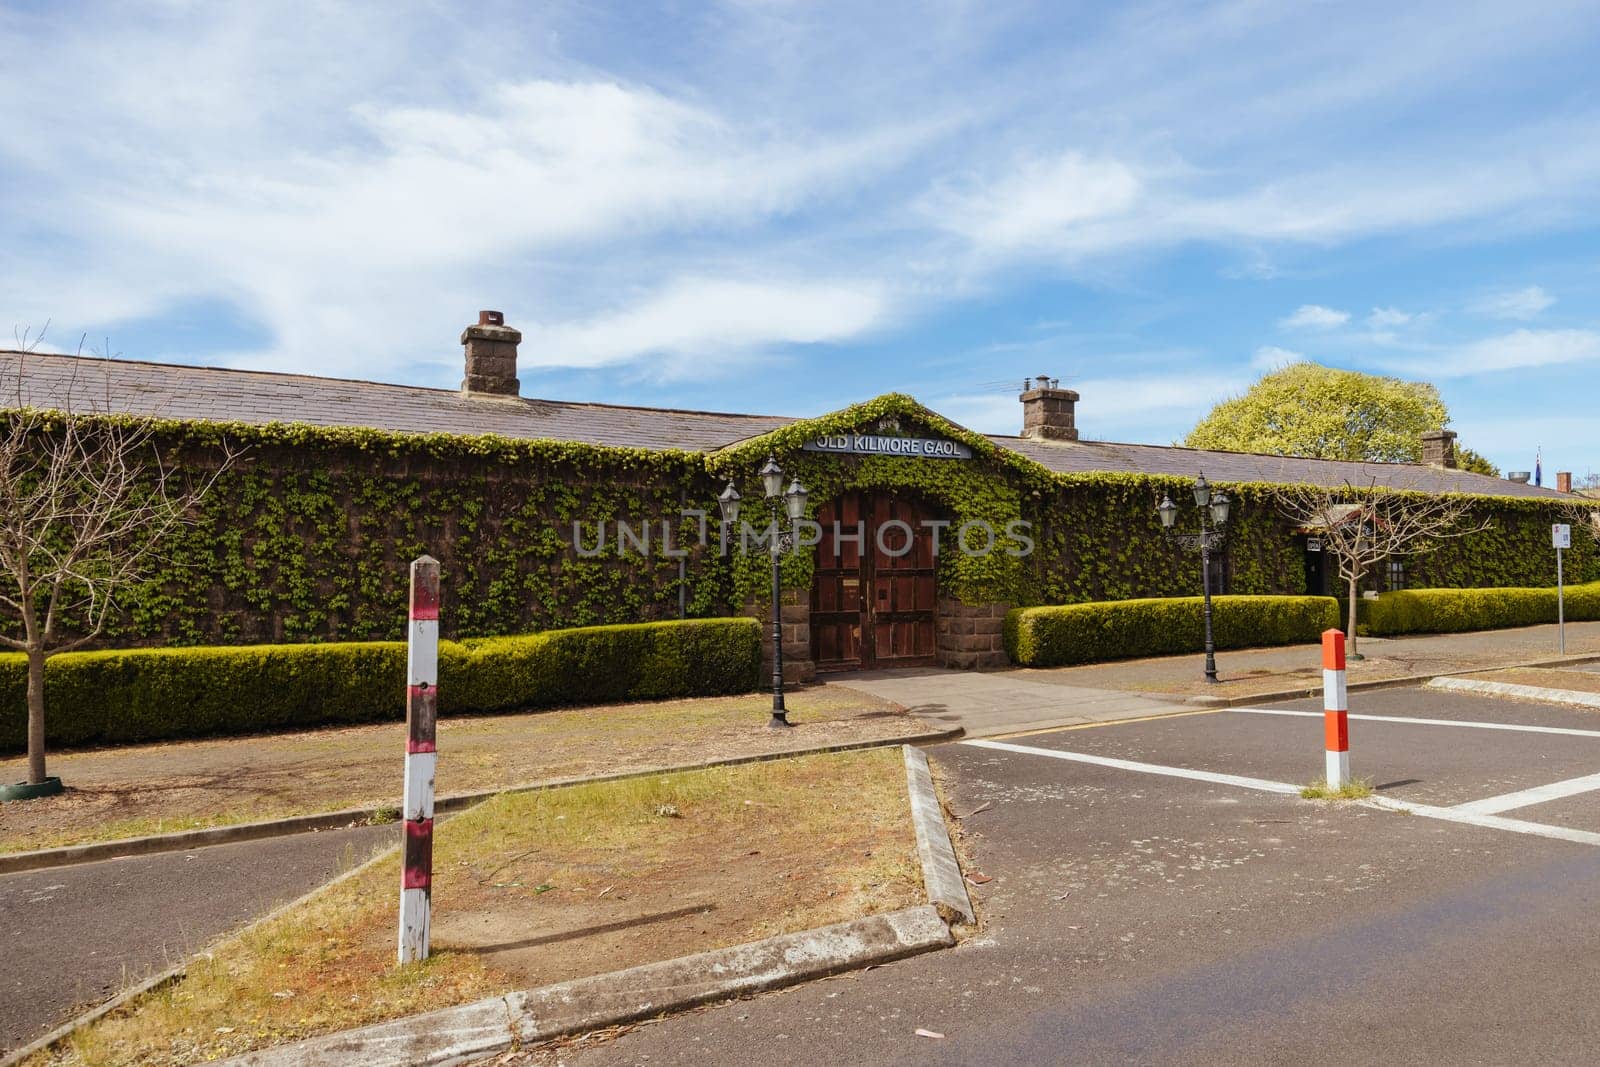 Old Kilmore Gaol in Australia by FiledIMAGE